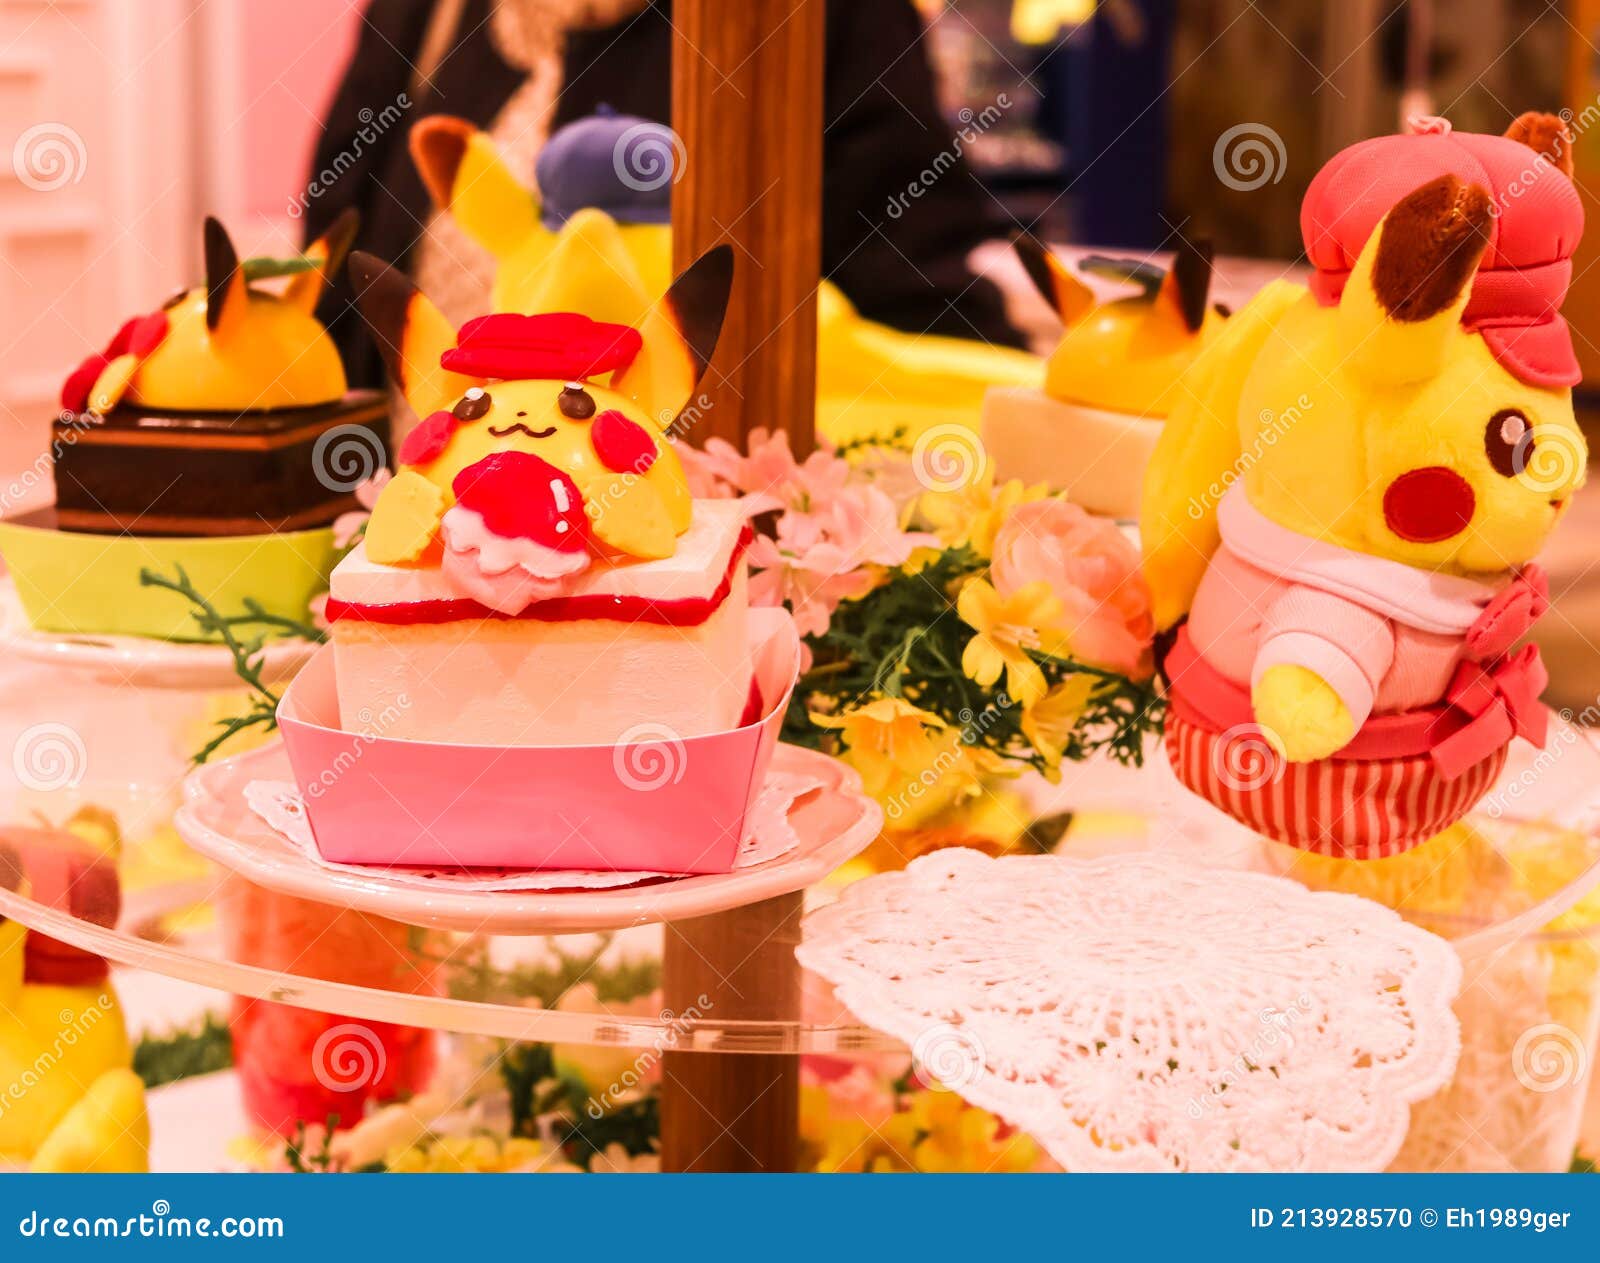 Gâteau décoré Pikachu Pokemon